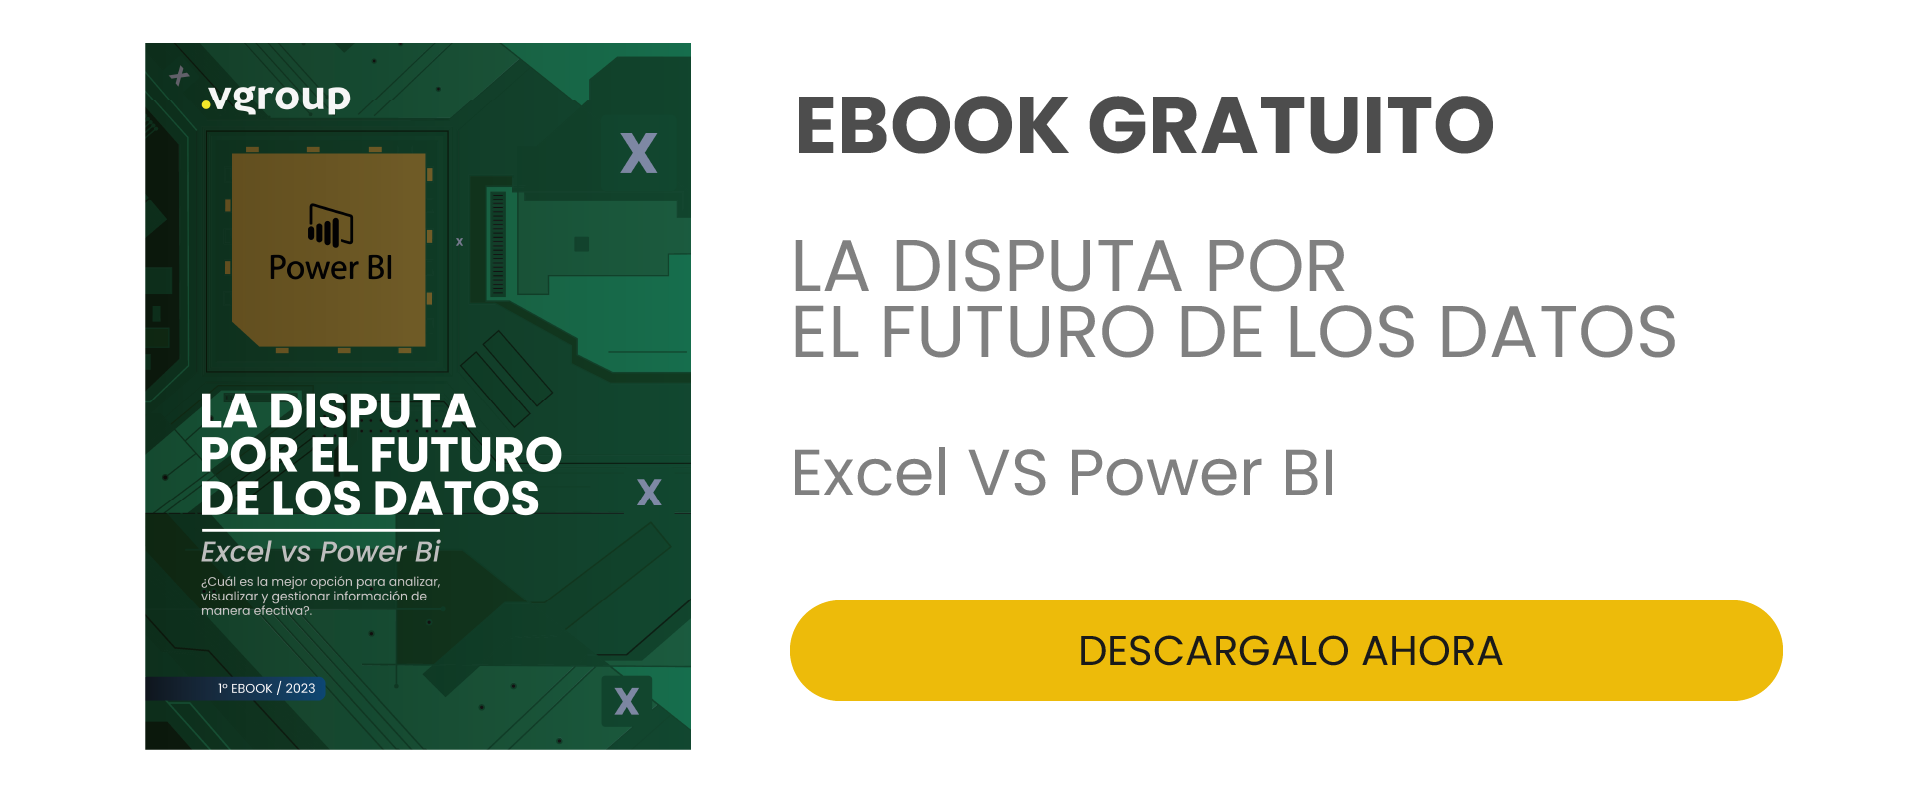 Descarga gratis Ebook Excel VS Power Bi